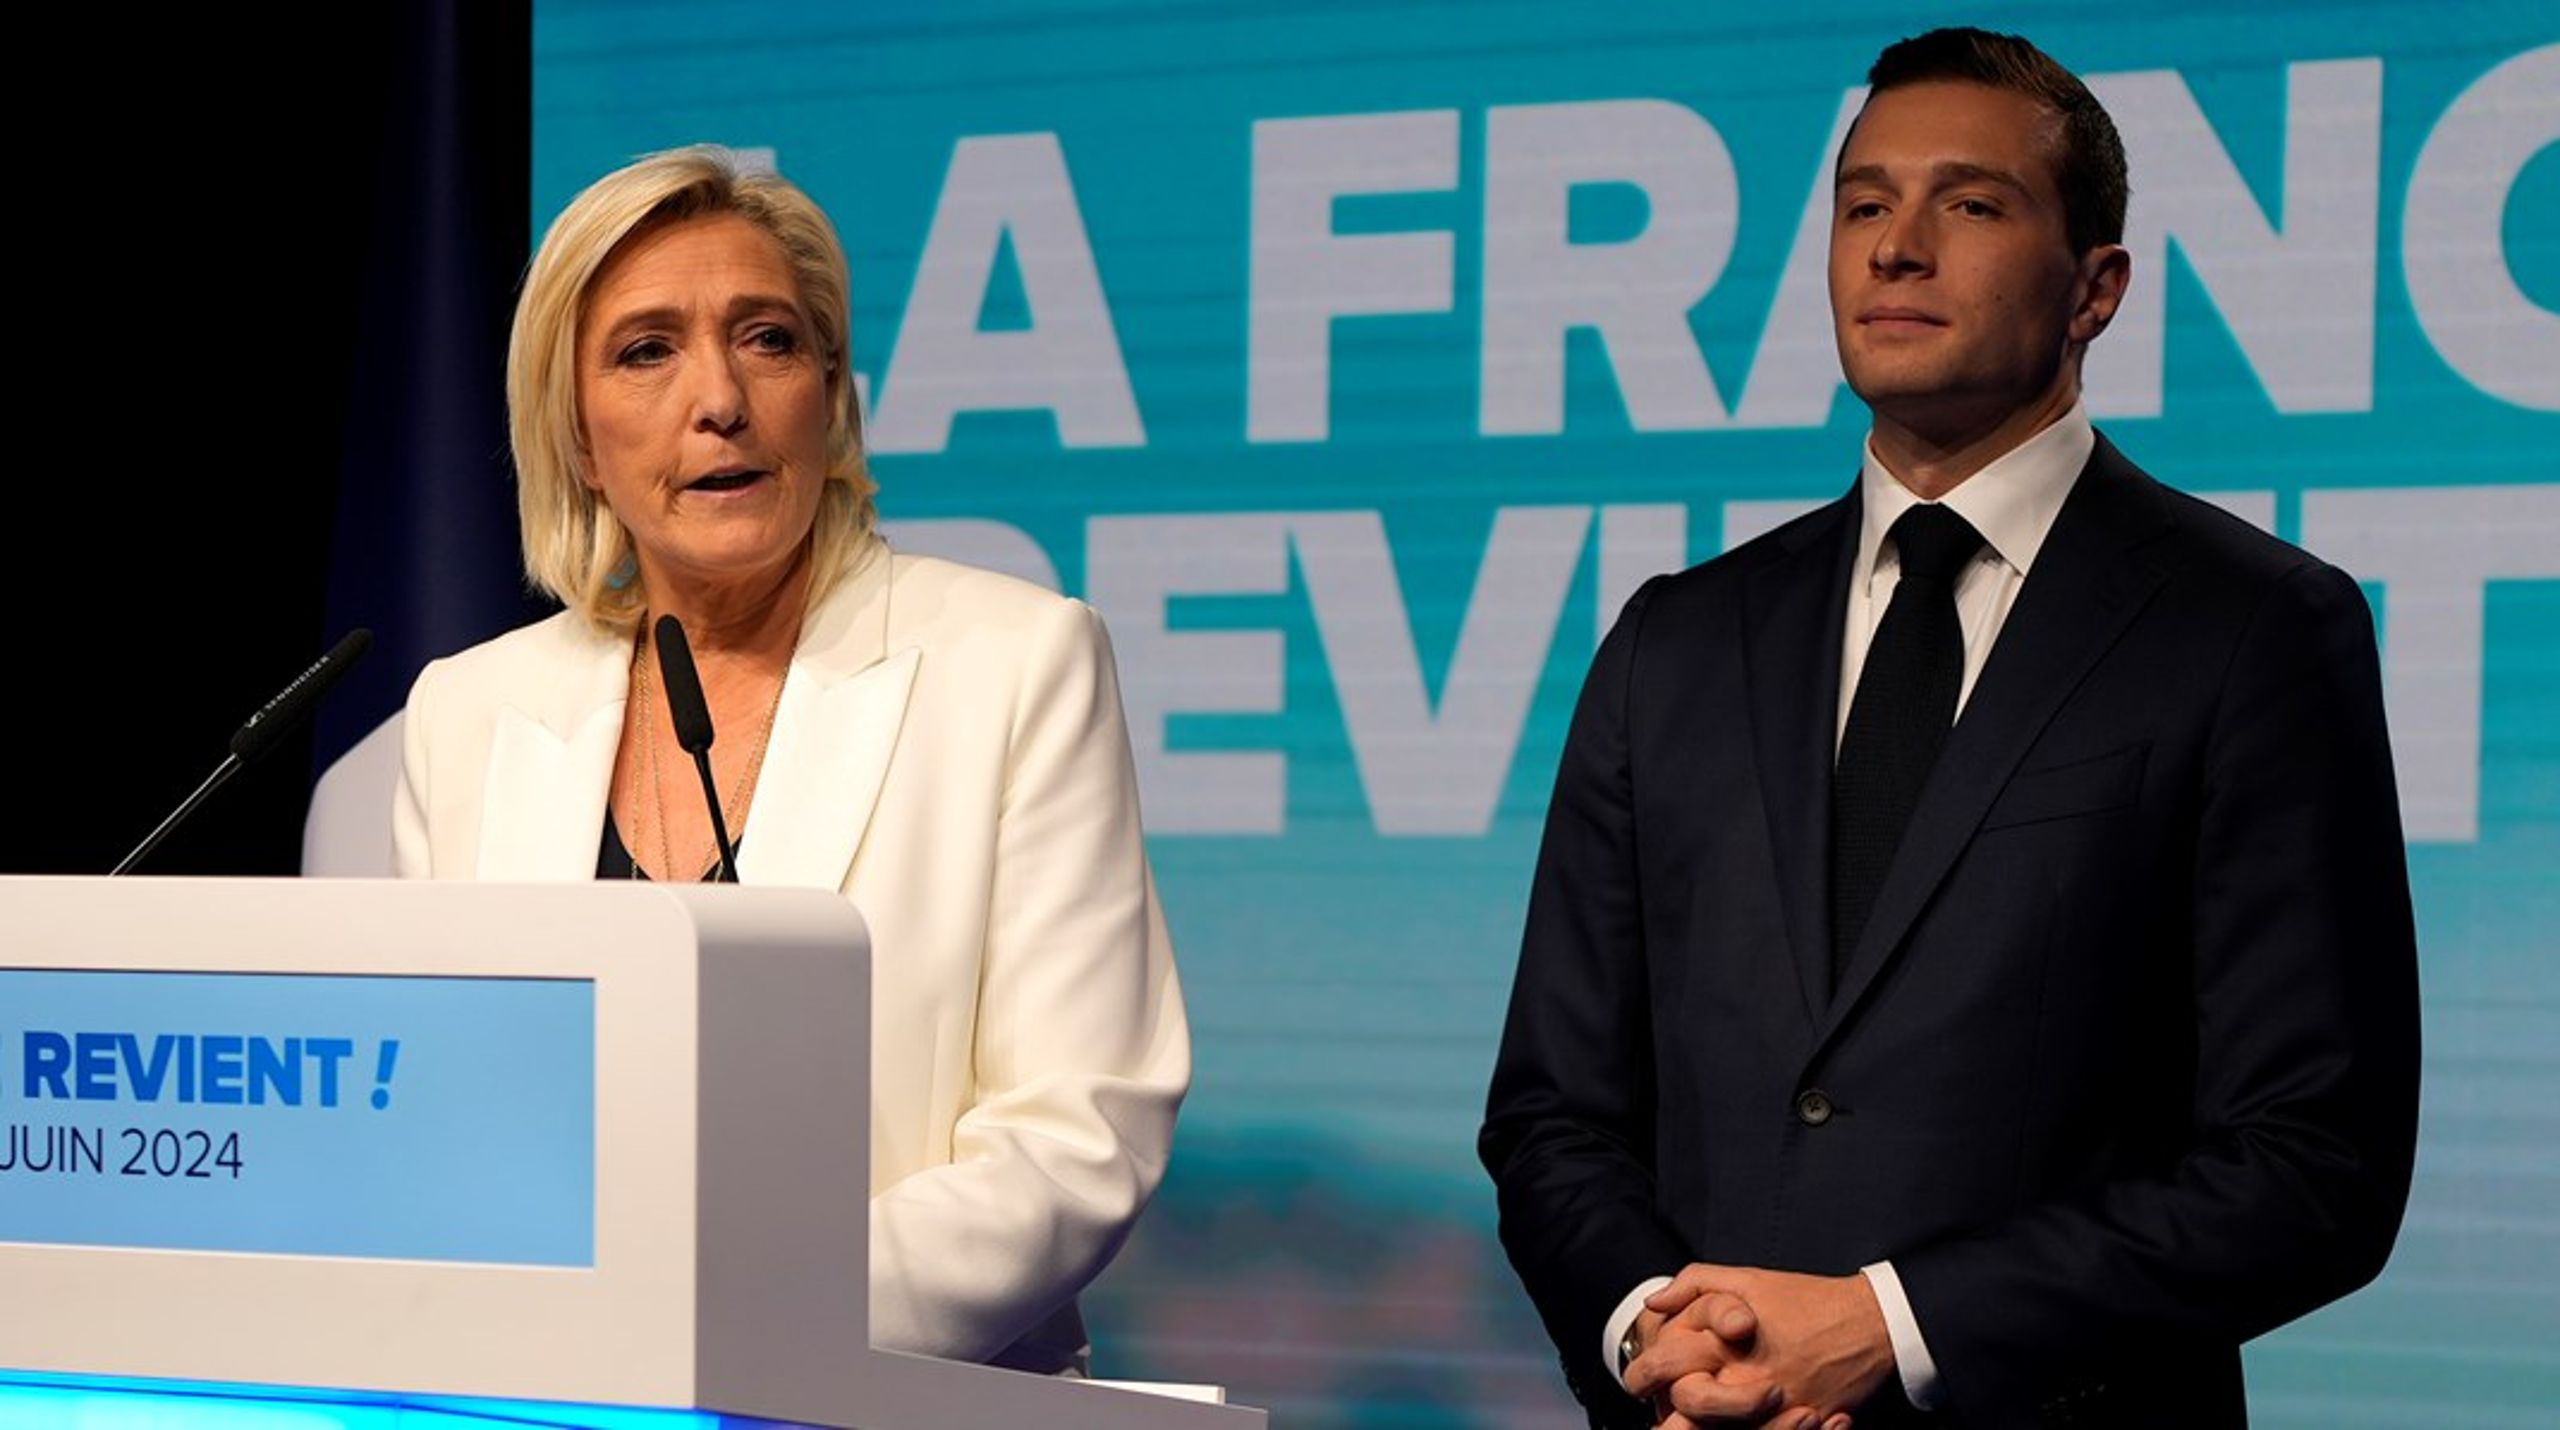 Højrefløjspartiet Rassemblement National med Marine Le Pen har fået et godt europaparlamentsvalg. Så godt, at Frankrigs præsident,&nbsp;Emmanuel&nbsp;Macron, der fik en gedigen vælgerlussing, søndag aften valgte at&nbsp;udskrive valg til det franske parlamentet 30. juni.&nbsp;